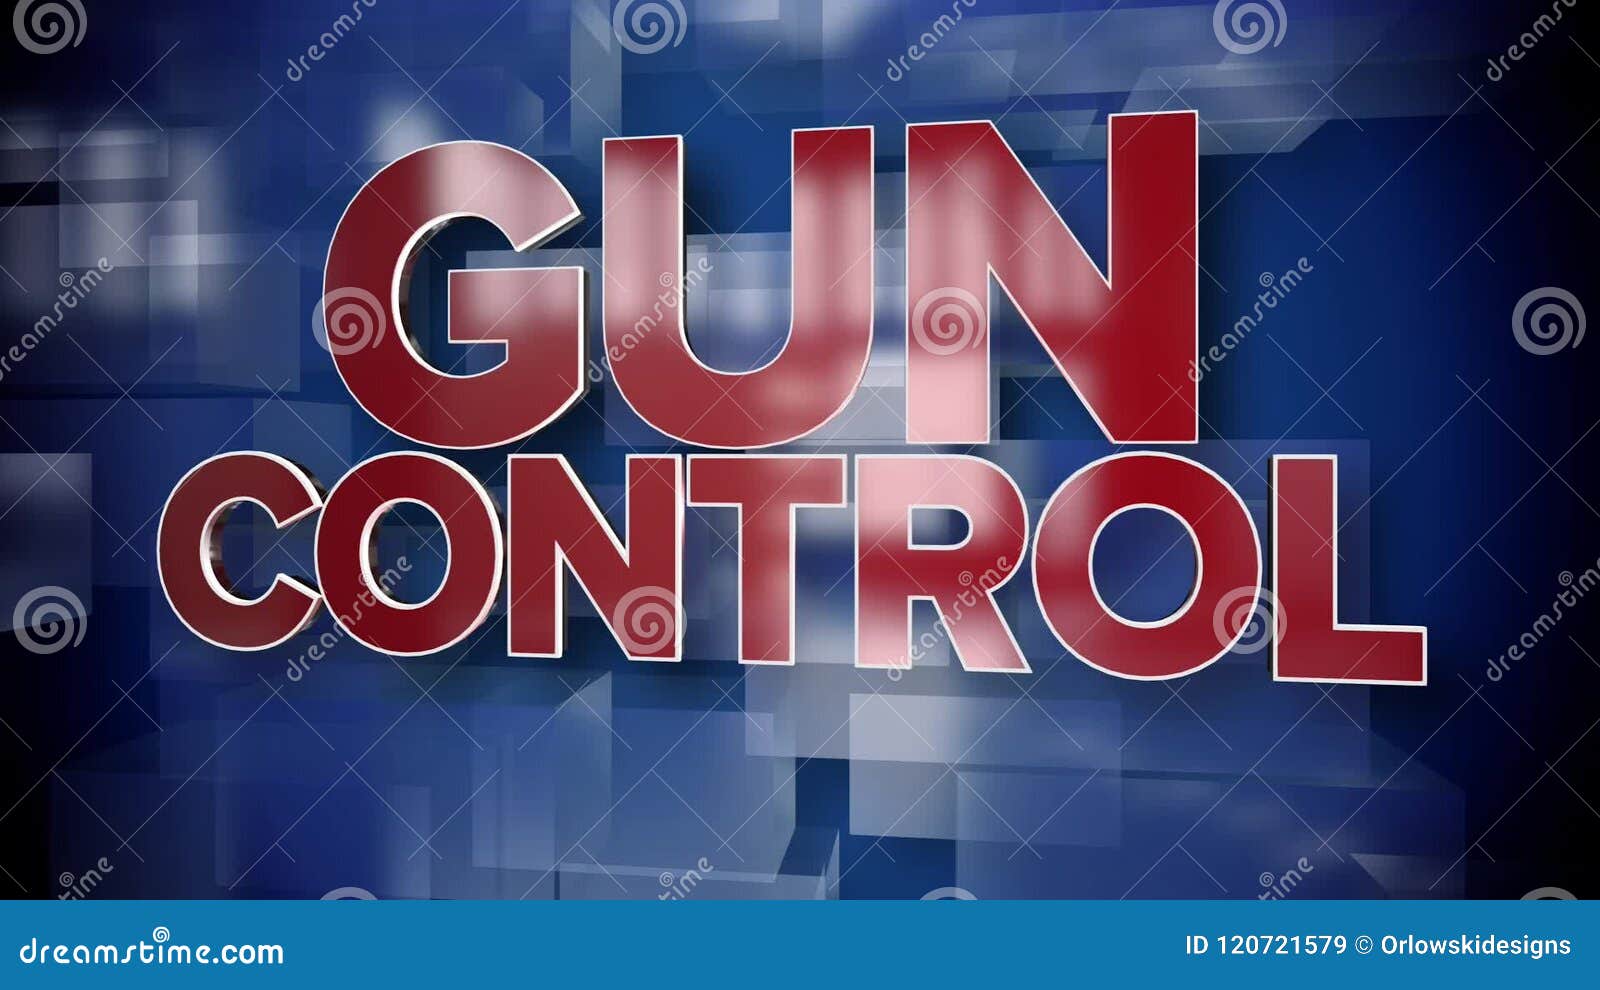 gun control titles